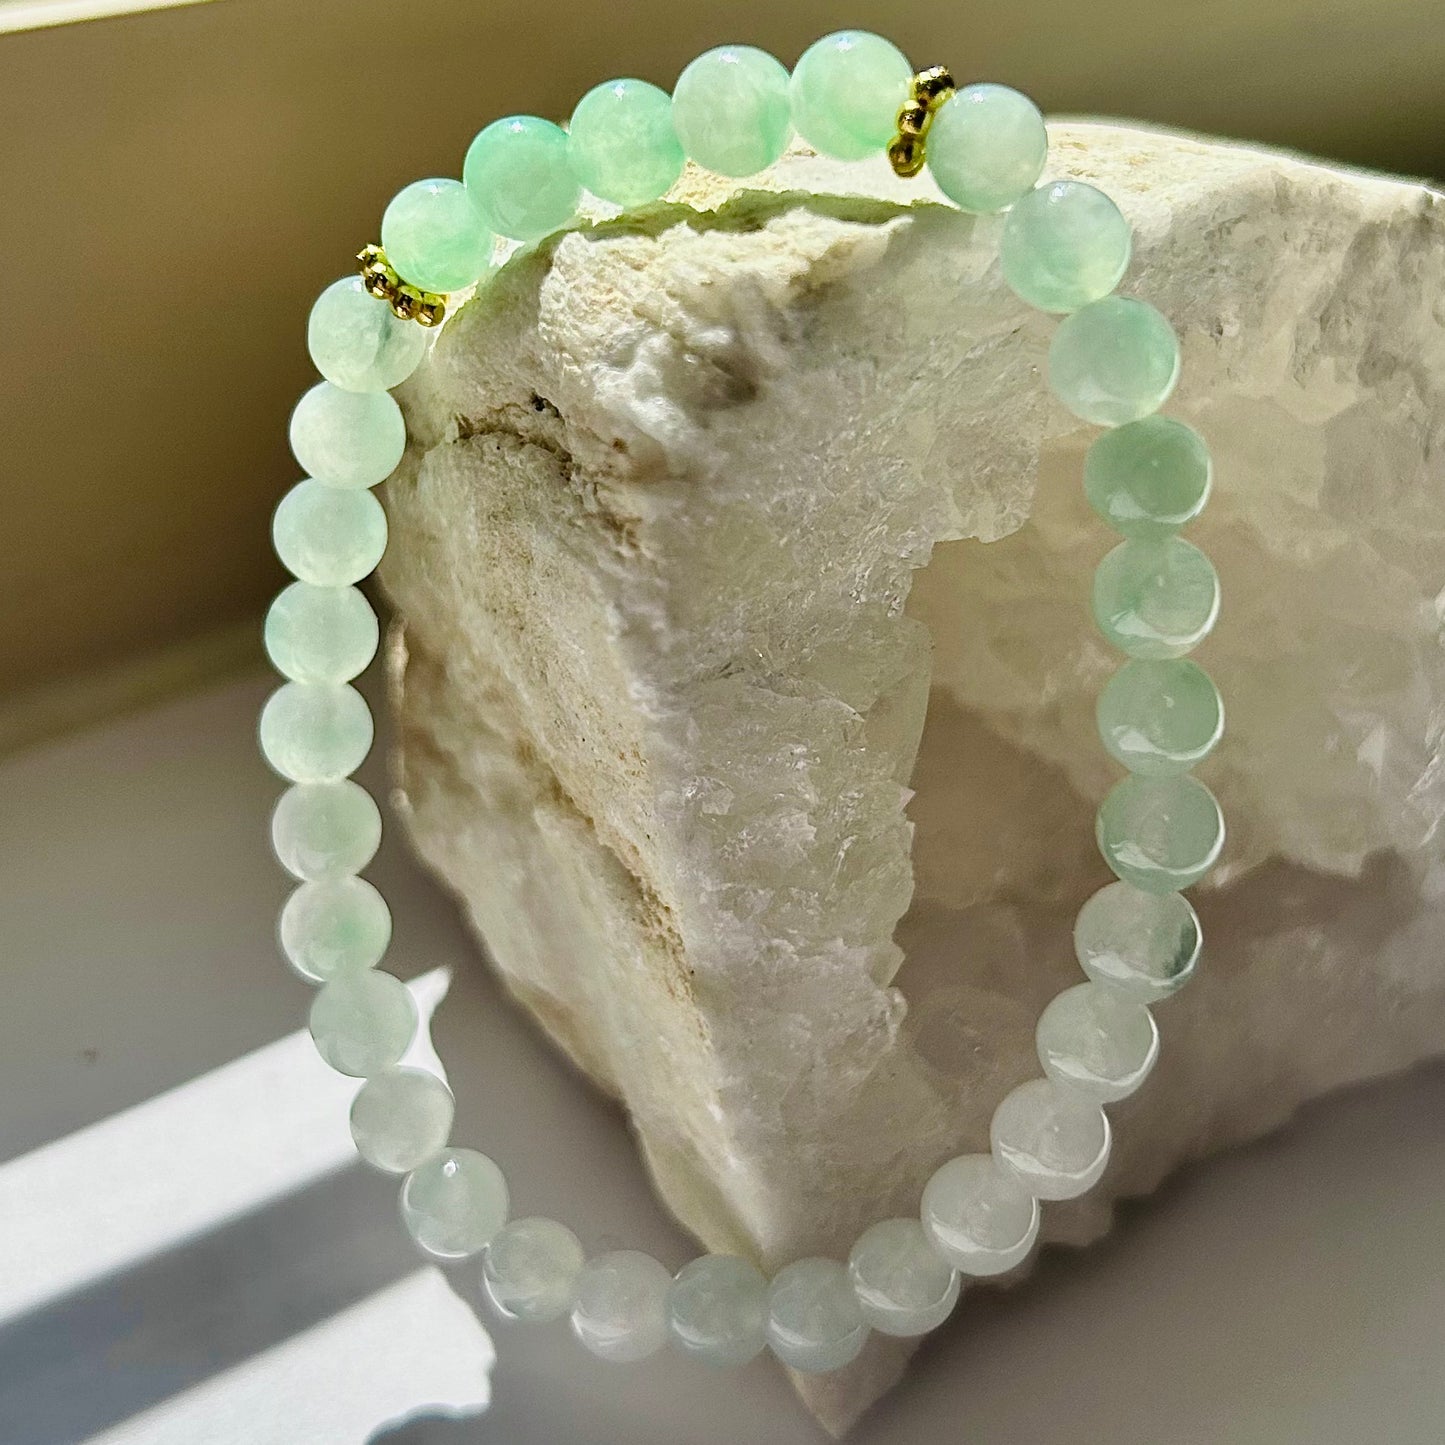 100% Untreated Genuine Type A Burmese Icy Green Jadeite Bracelet, Gradient Color Icy Green Jadeite Bracelet, 6mm, Handmade in Canada|天然缅甸冰透渐变绿翡翠圆珠四叶草手串